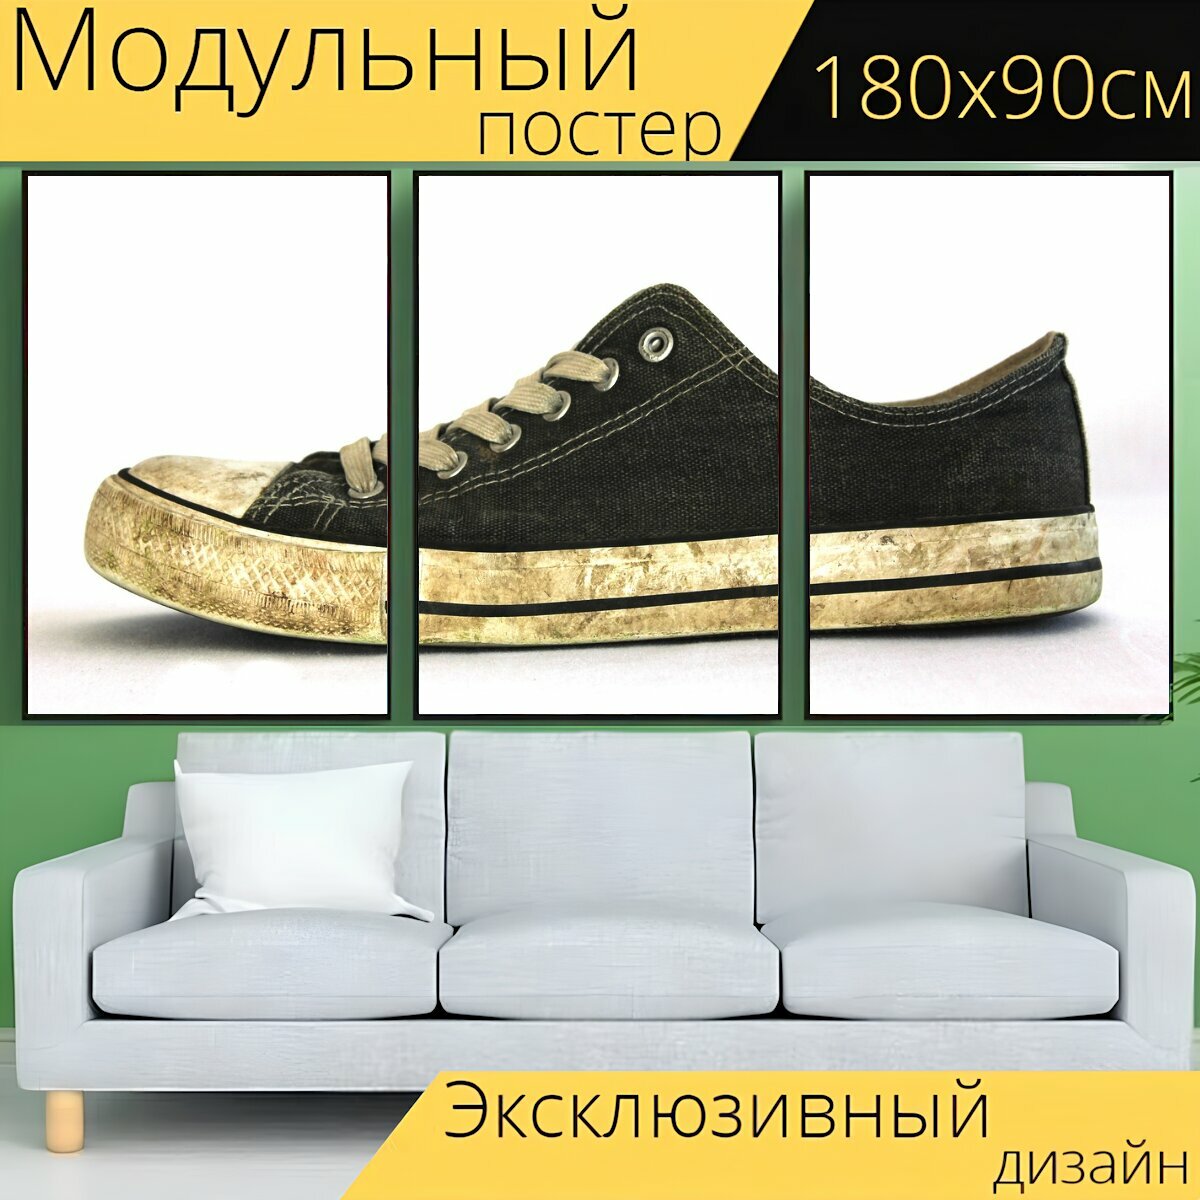 Модульный постер "Обувь, старый, старые туфли" 180 x 90 см. для интерьера